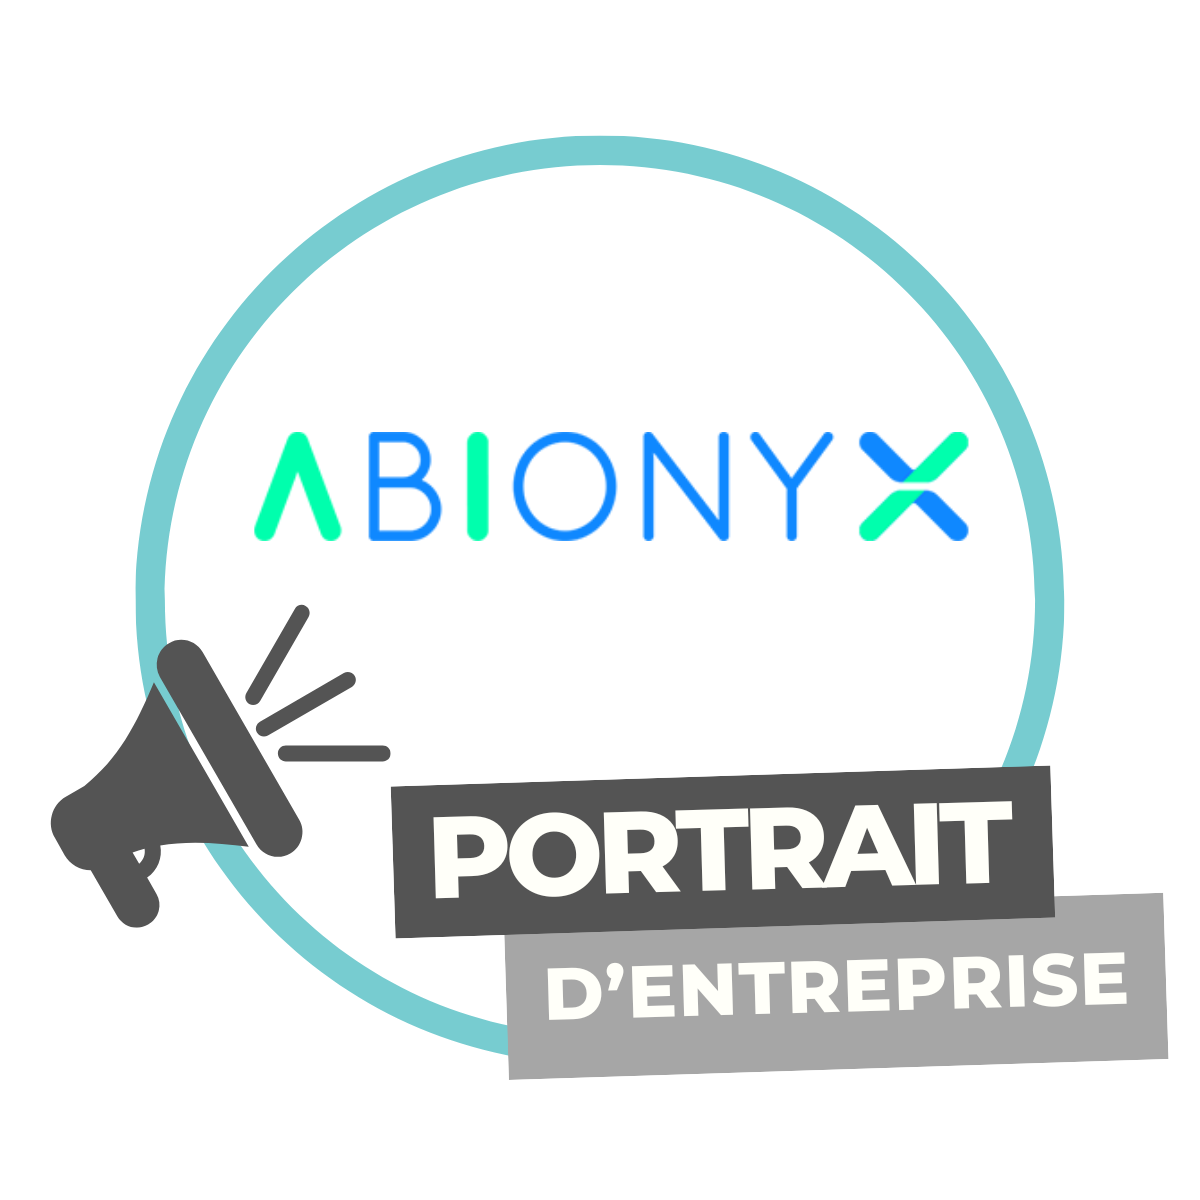 Portrait d’entreprise | Abionyx